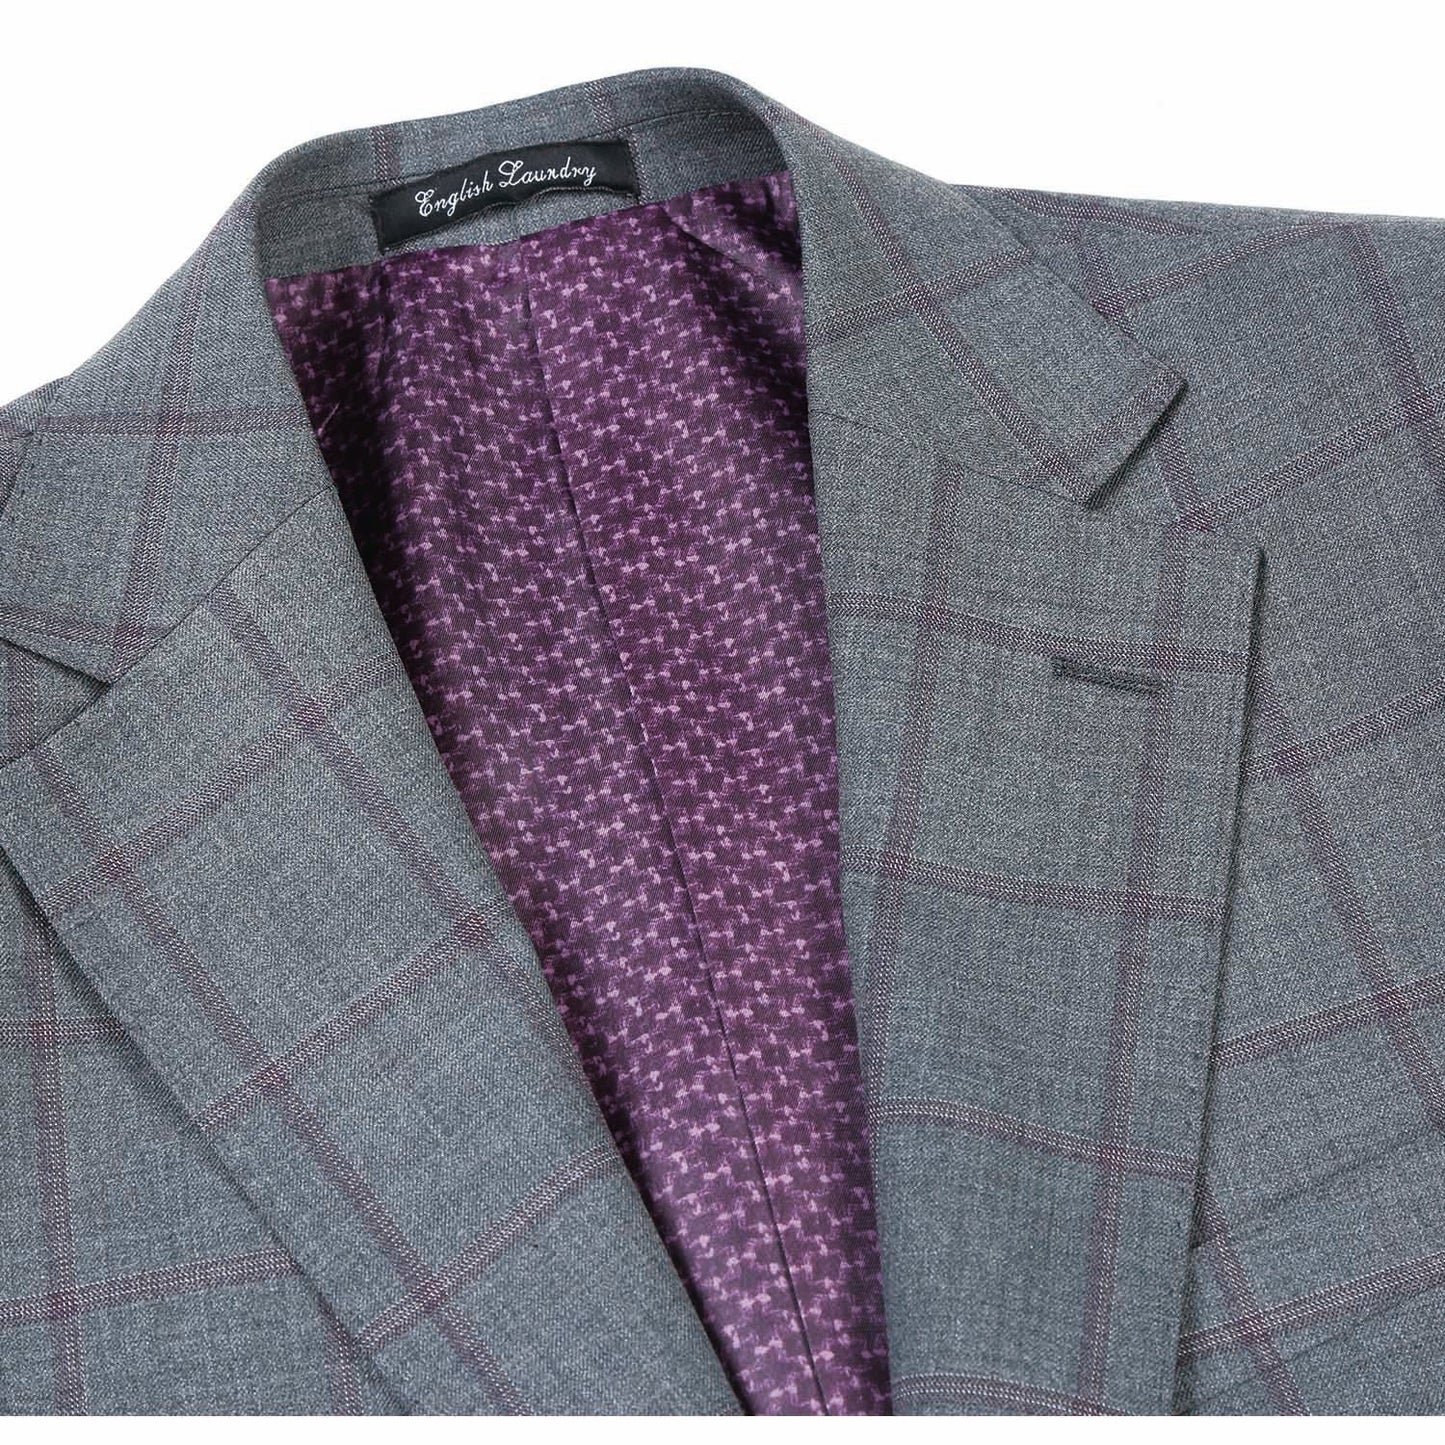 EL82-61-092 Slim Fit Gray and Burgundy Windowpane Wool Suit